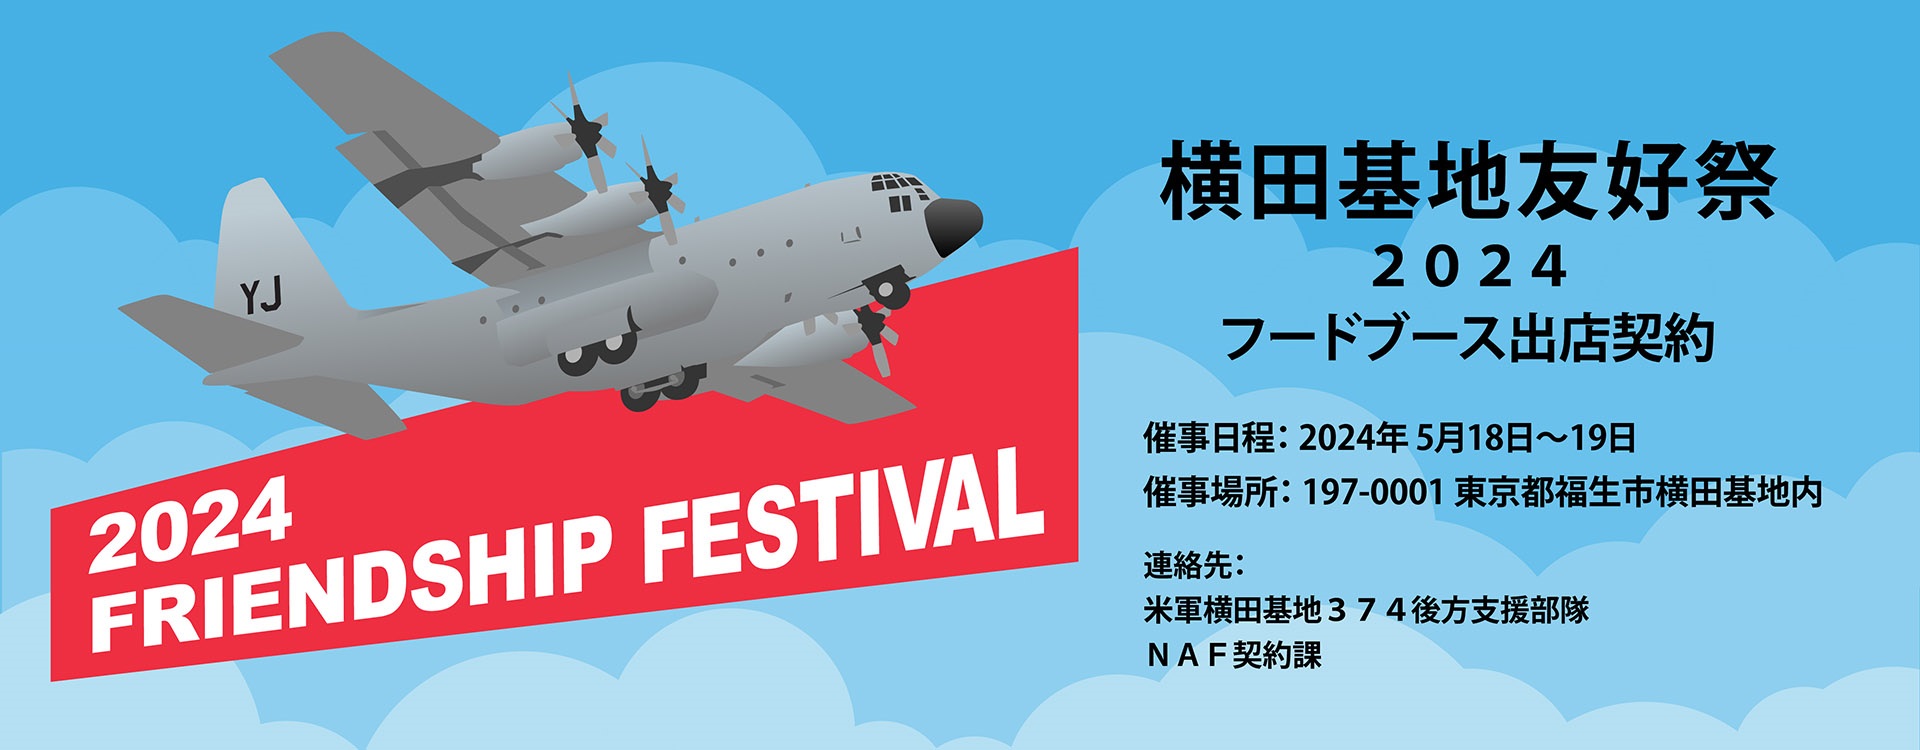 横田基地 日米友好祭 フレンドシップフェスティバル2024：ポスター